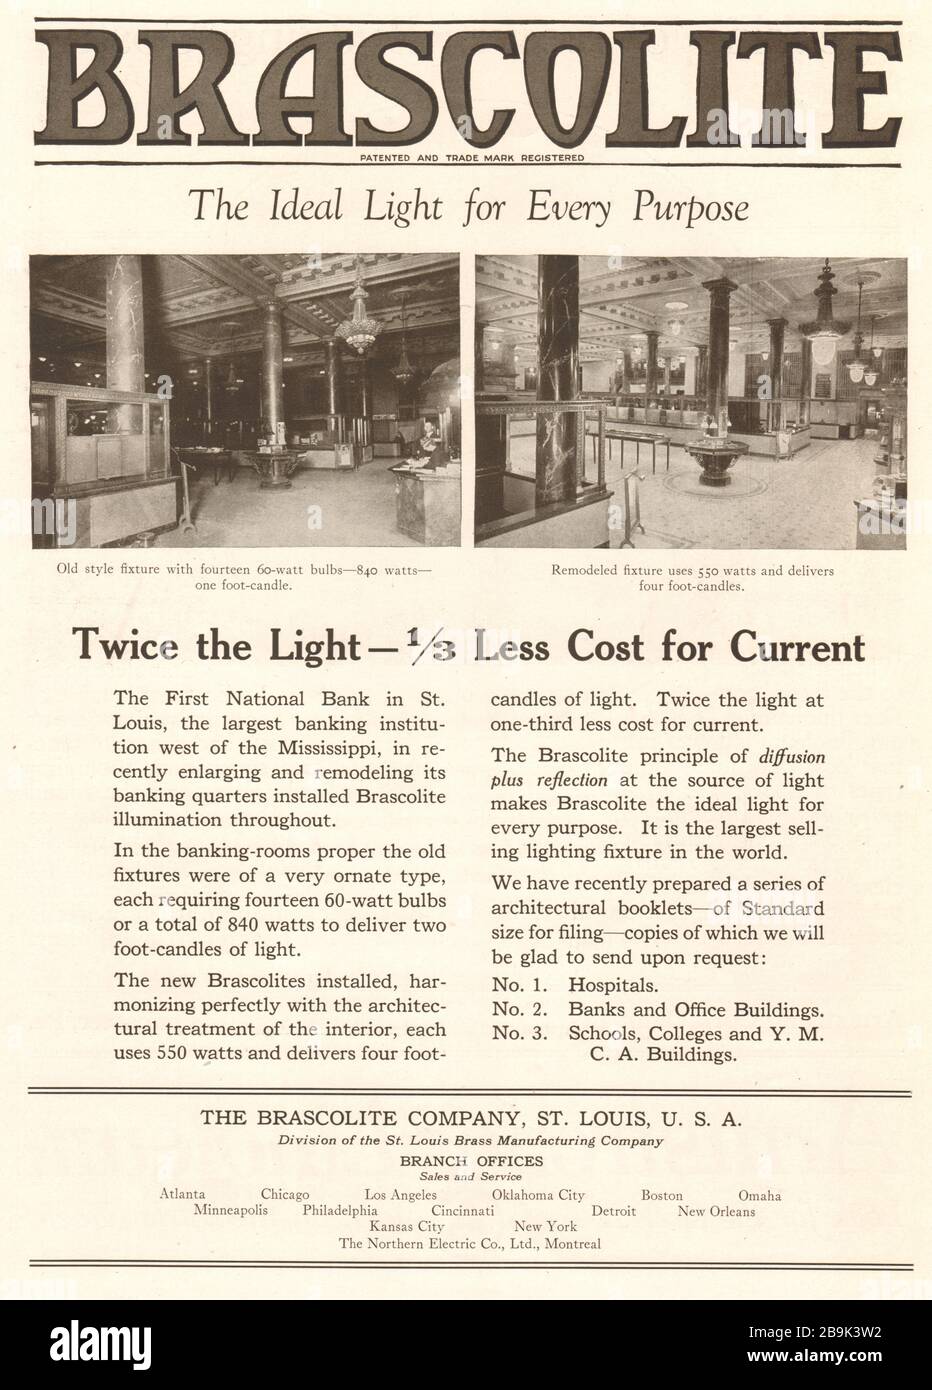 Brascolite. Das ideale Licht für jeden Zweck. Doppelt so leicht - 1/3 weniger Kosten für den aktuellen Stand. The Brascolite Company, St. Louis, Missouri, U.S.A (1922) Stockfoto